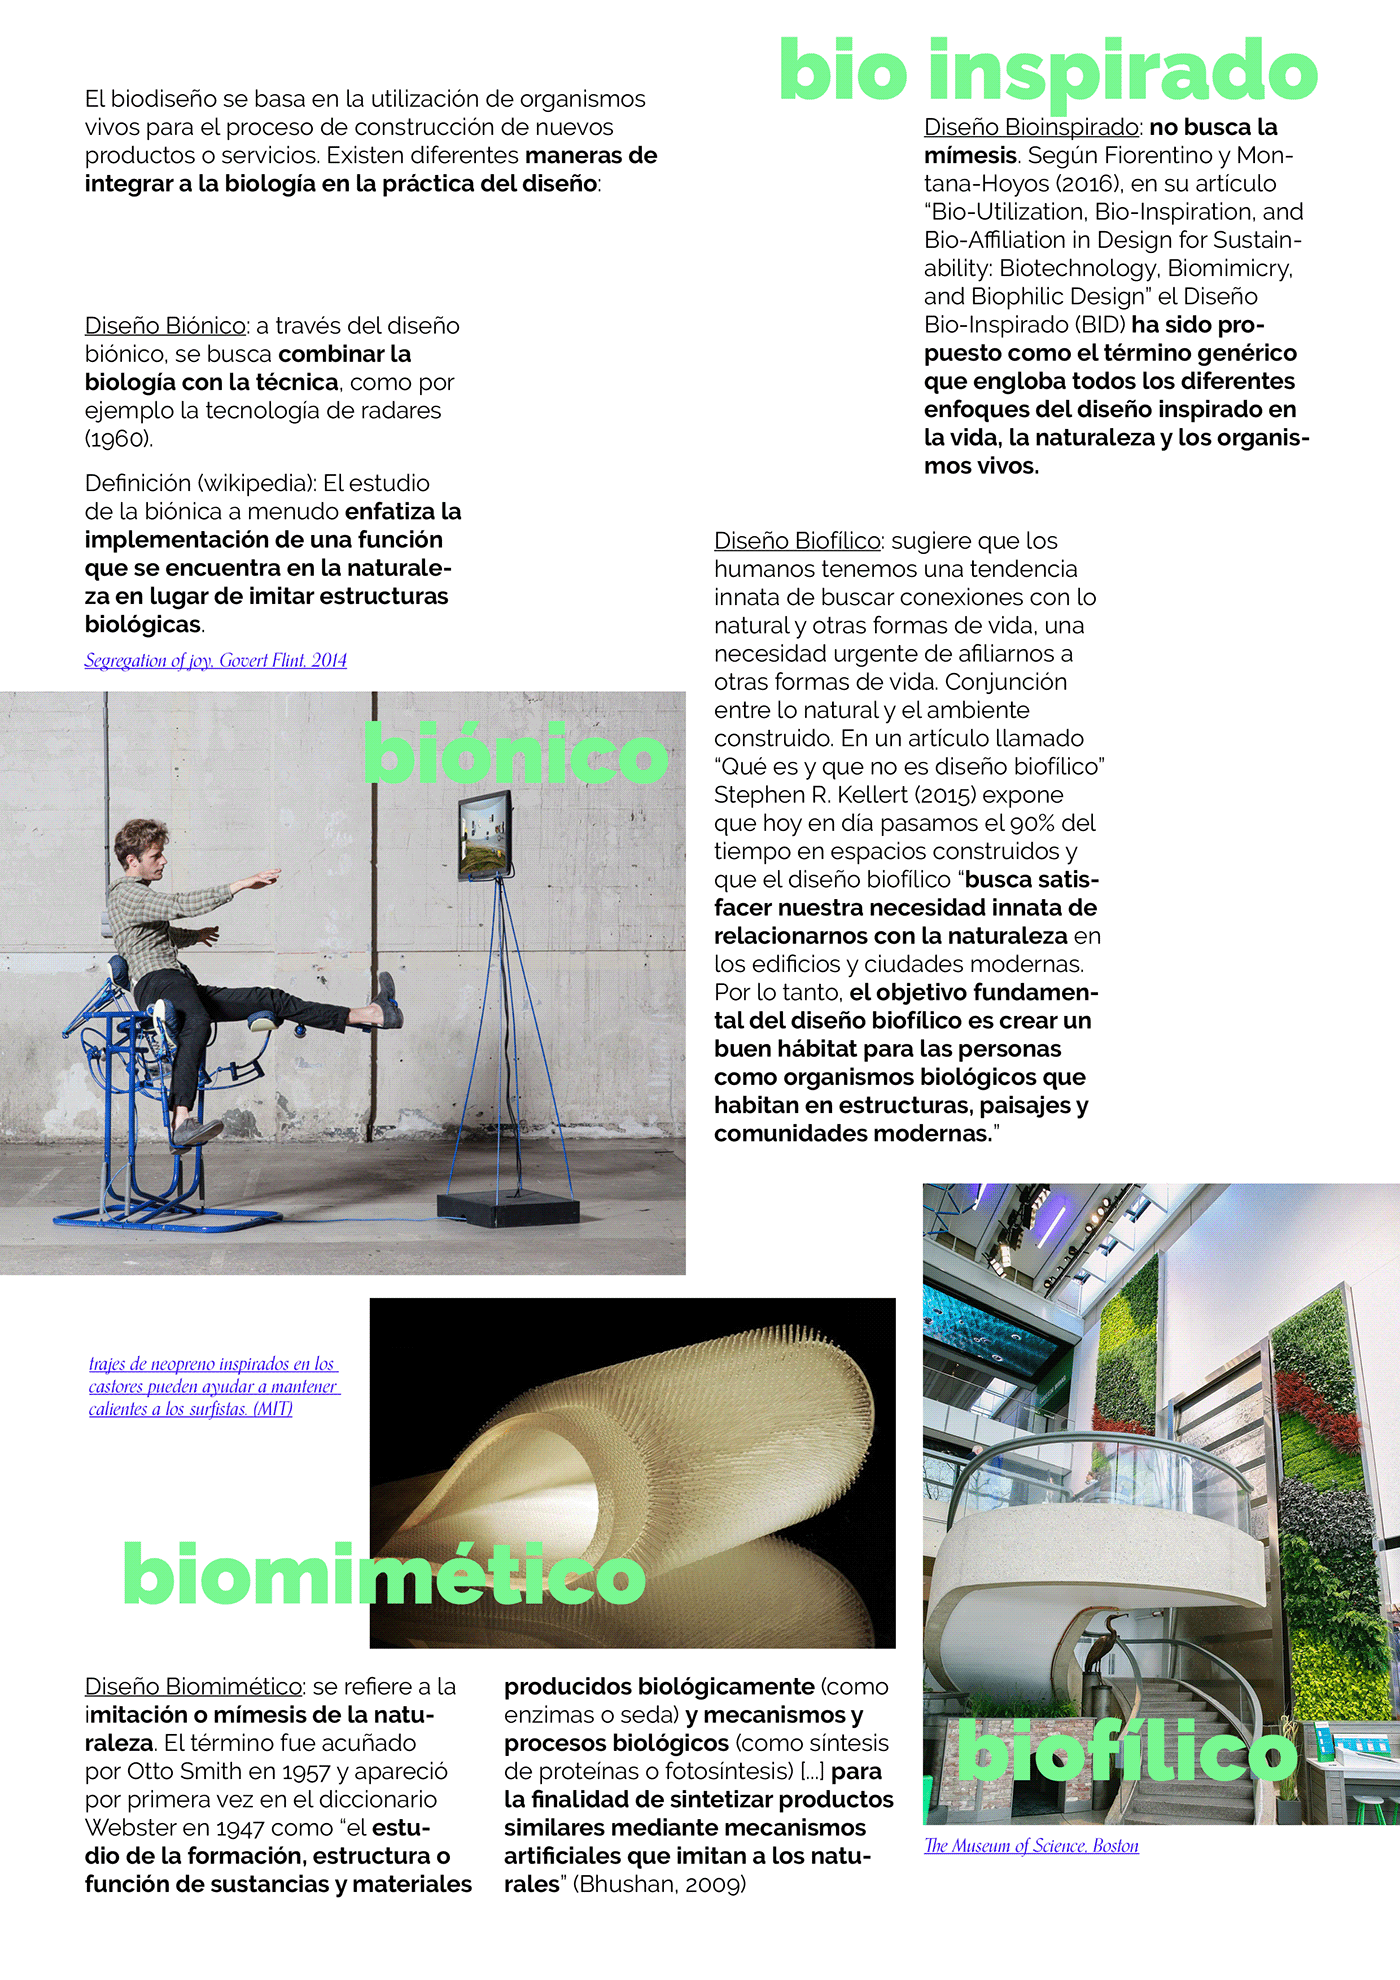 Biodesign design Sustainable Design transdisciplinary design